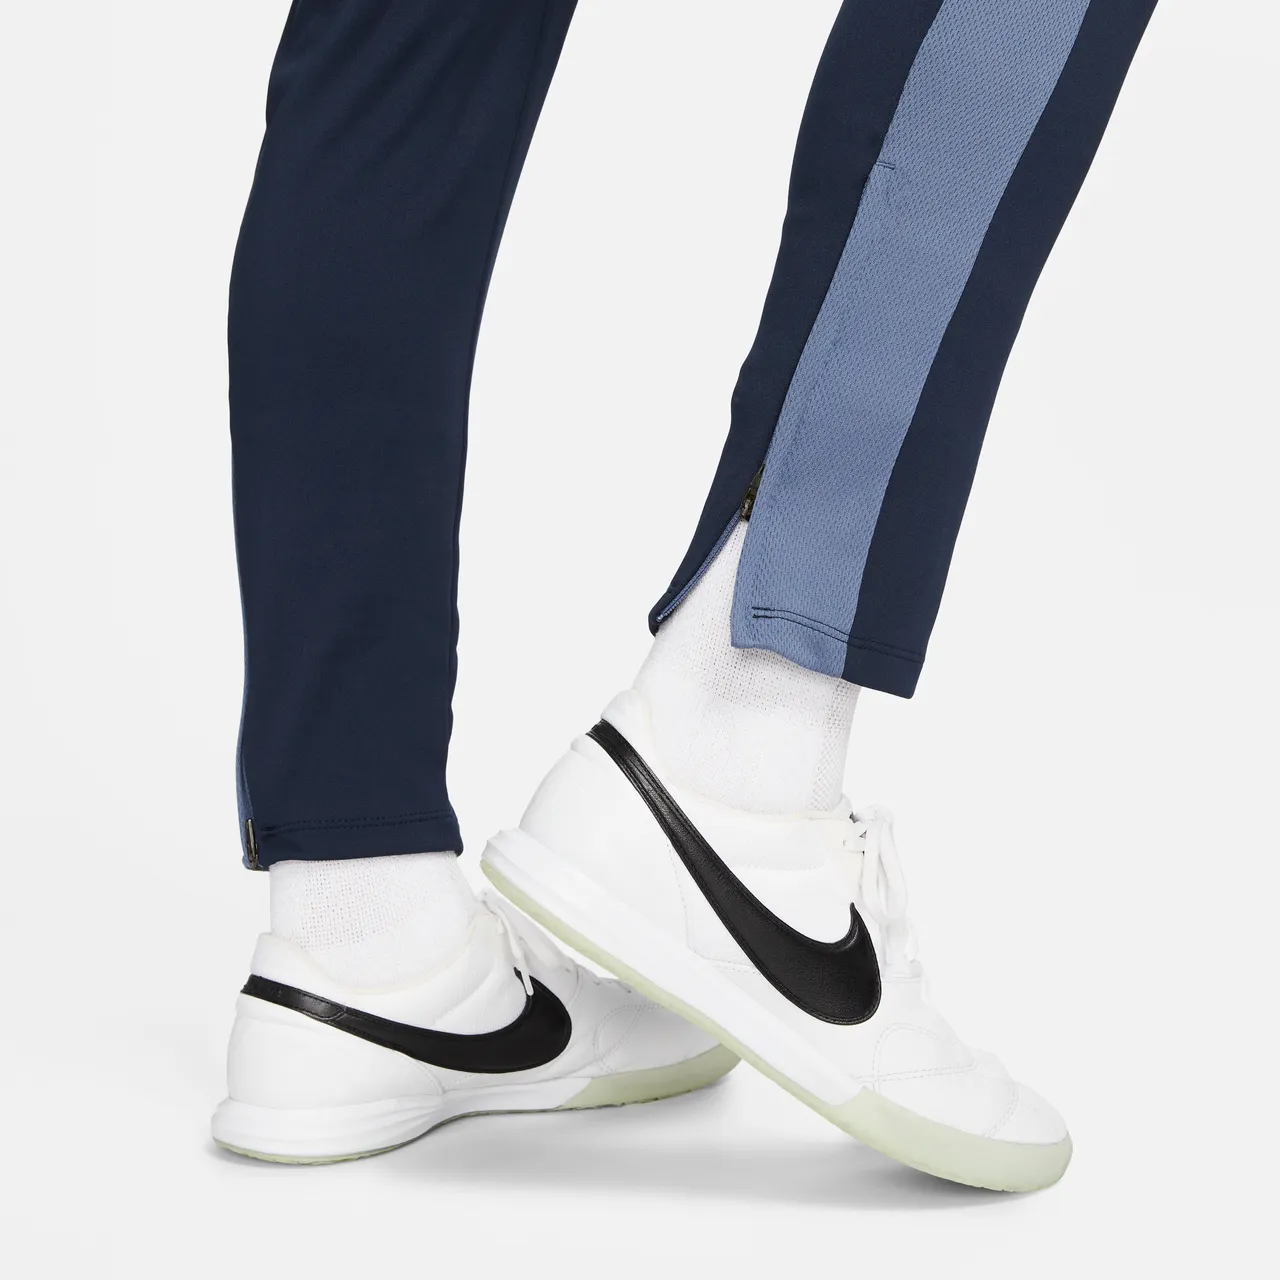 Nike Dri-FIT Academy Damen-Fußballhose - Blau